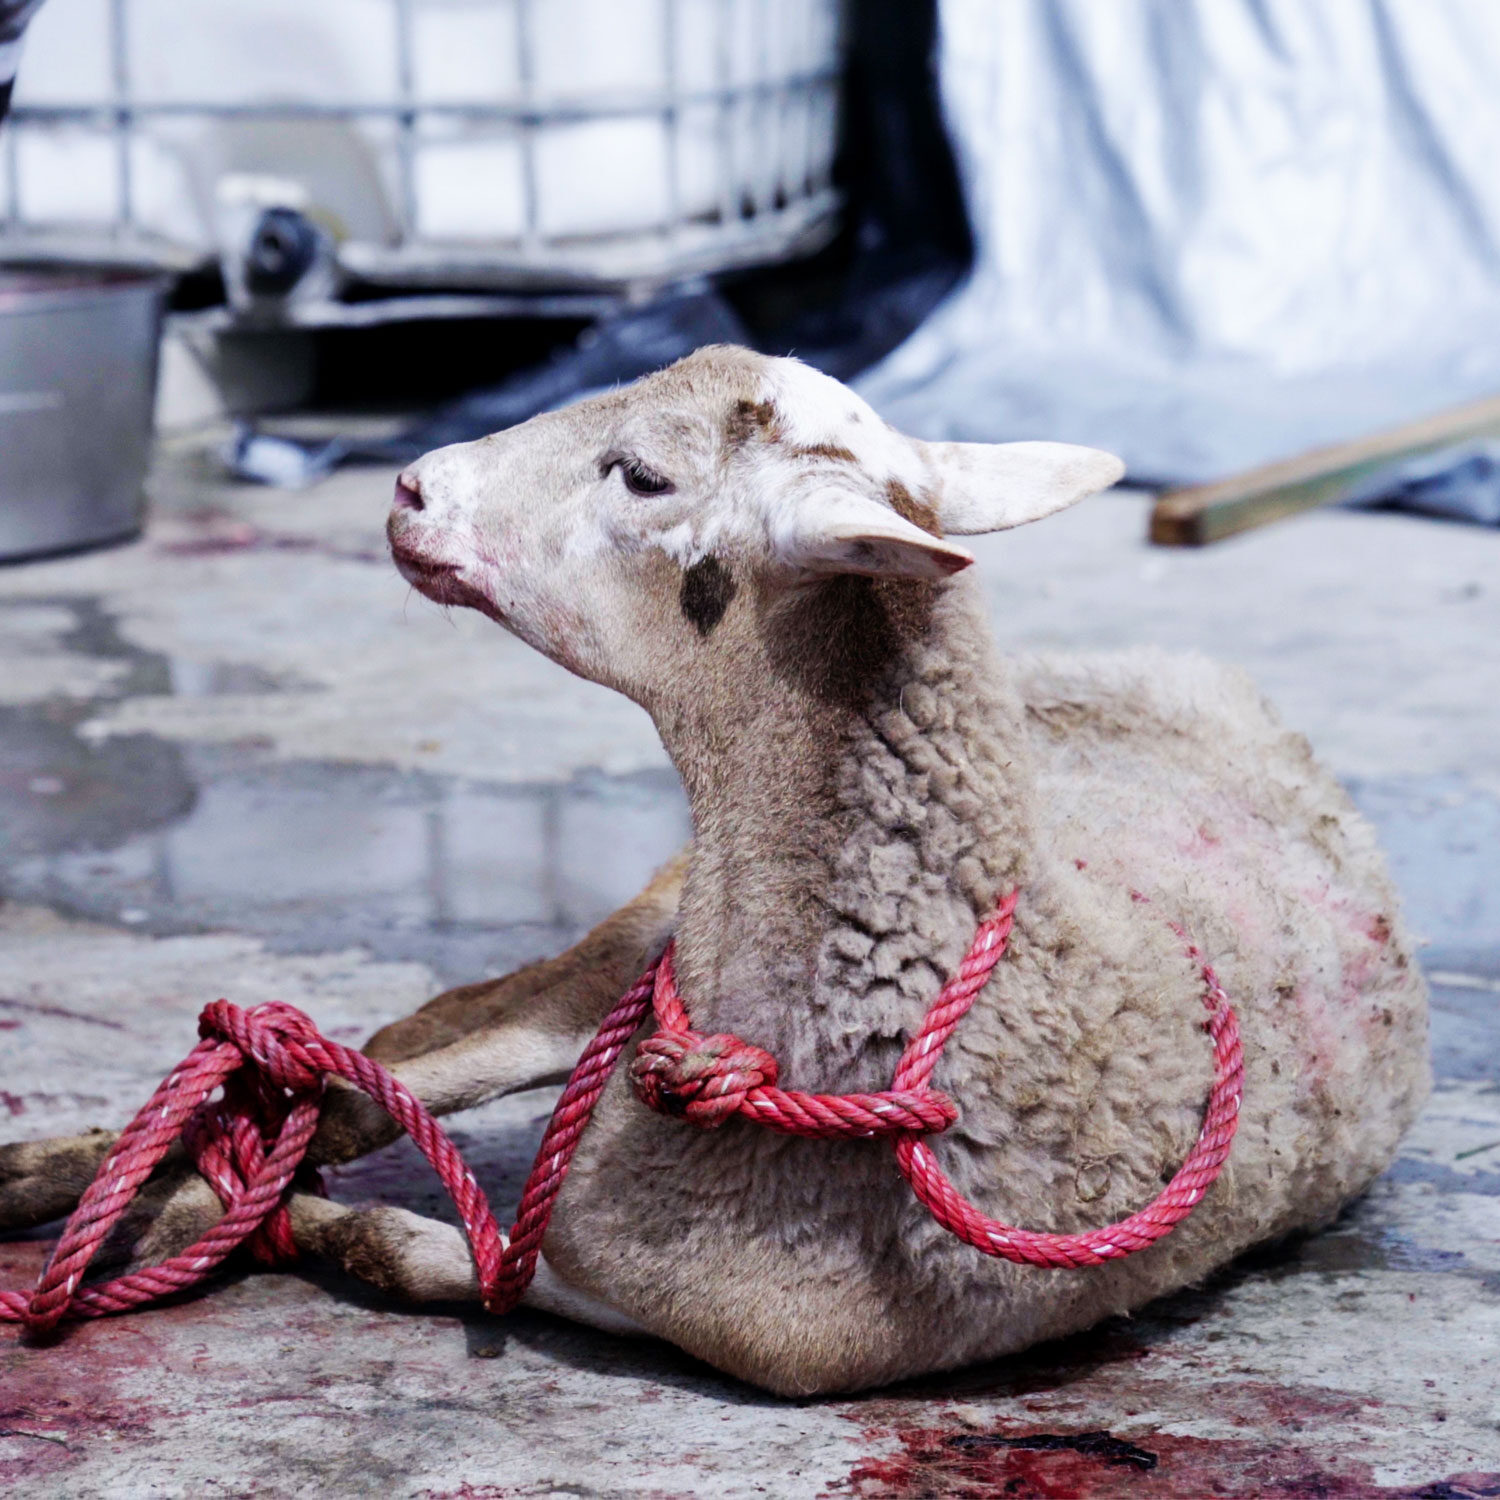 lamb on bloody slaughterhouse floor